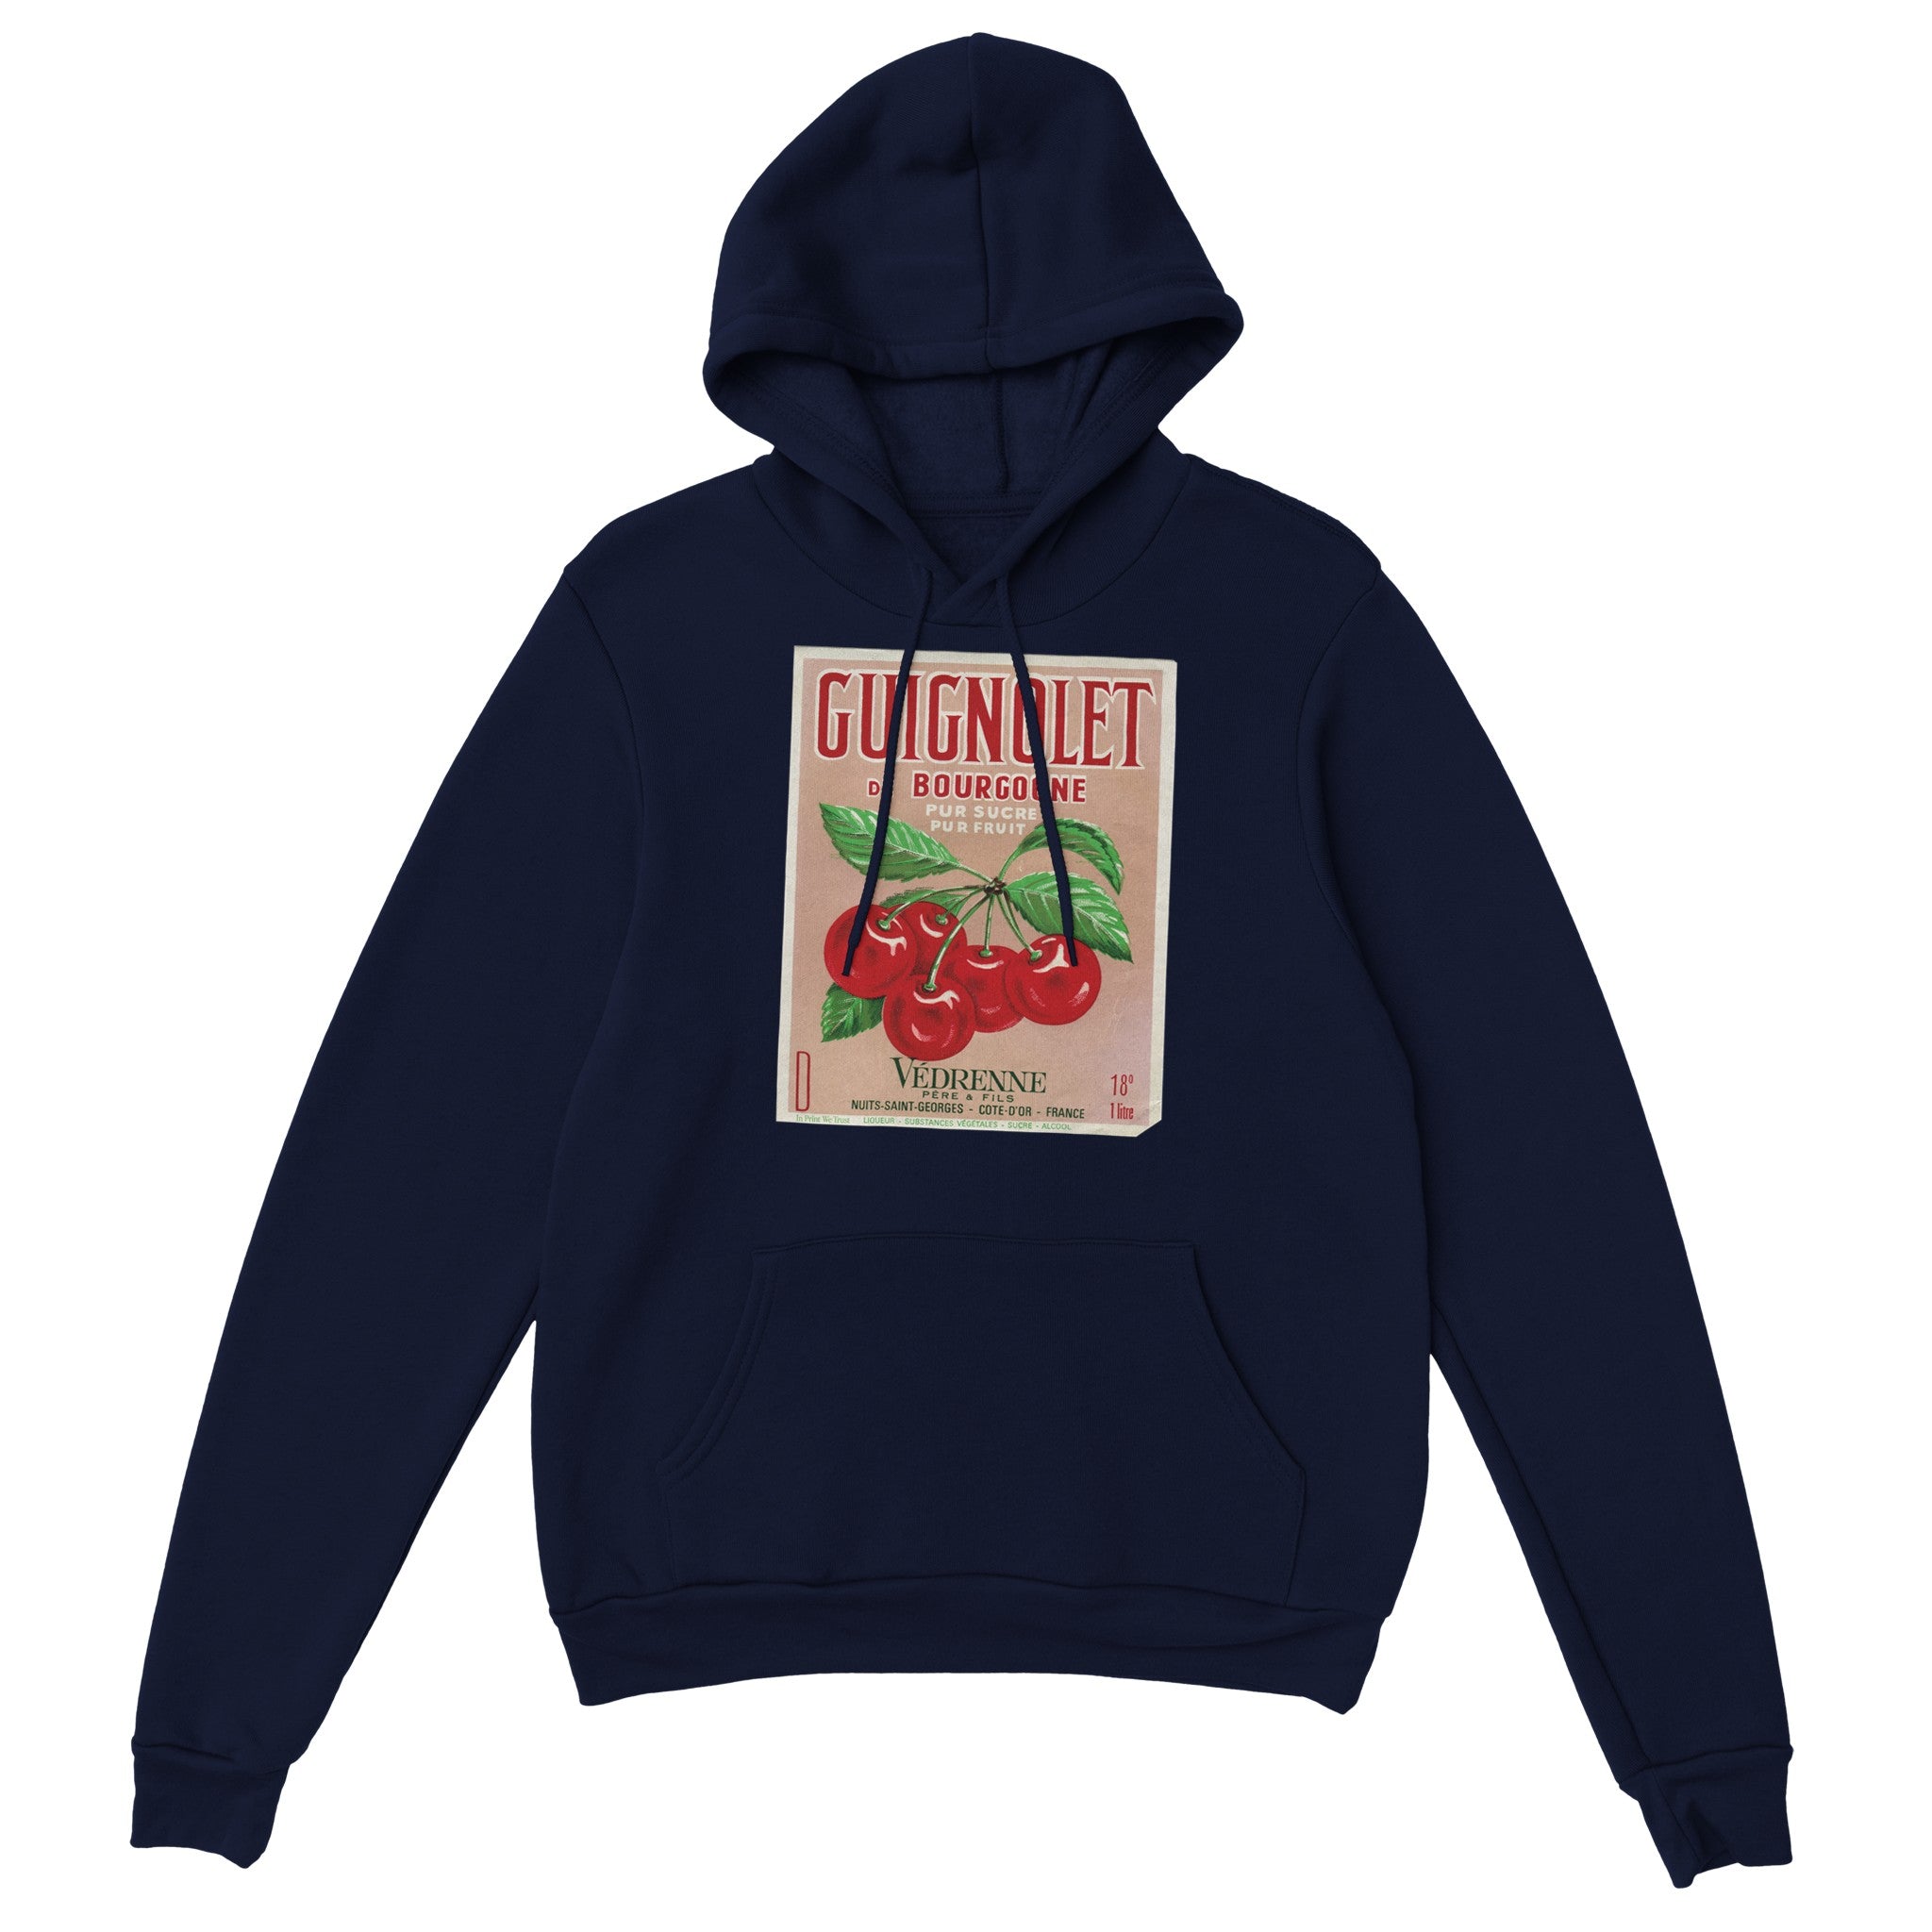 'Sucre' hoodie - In Print We Trust